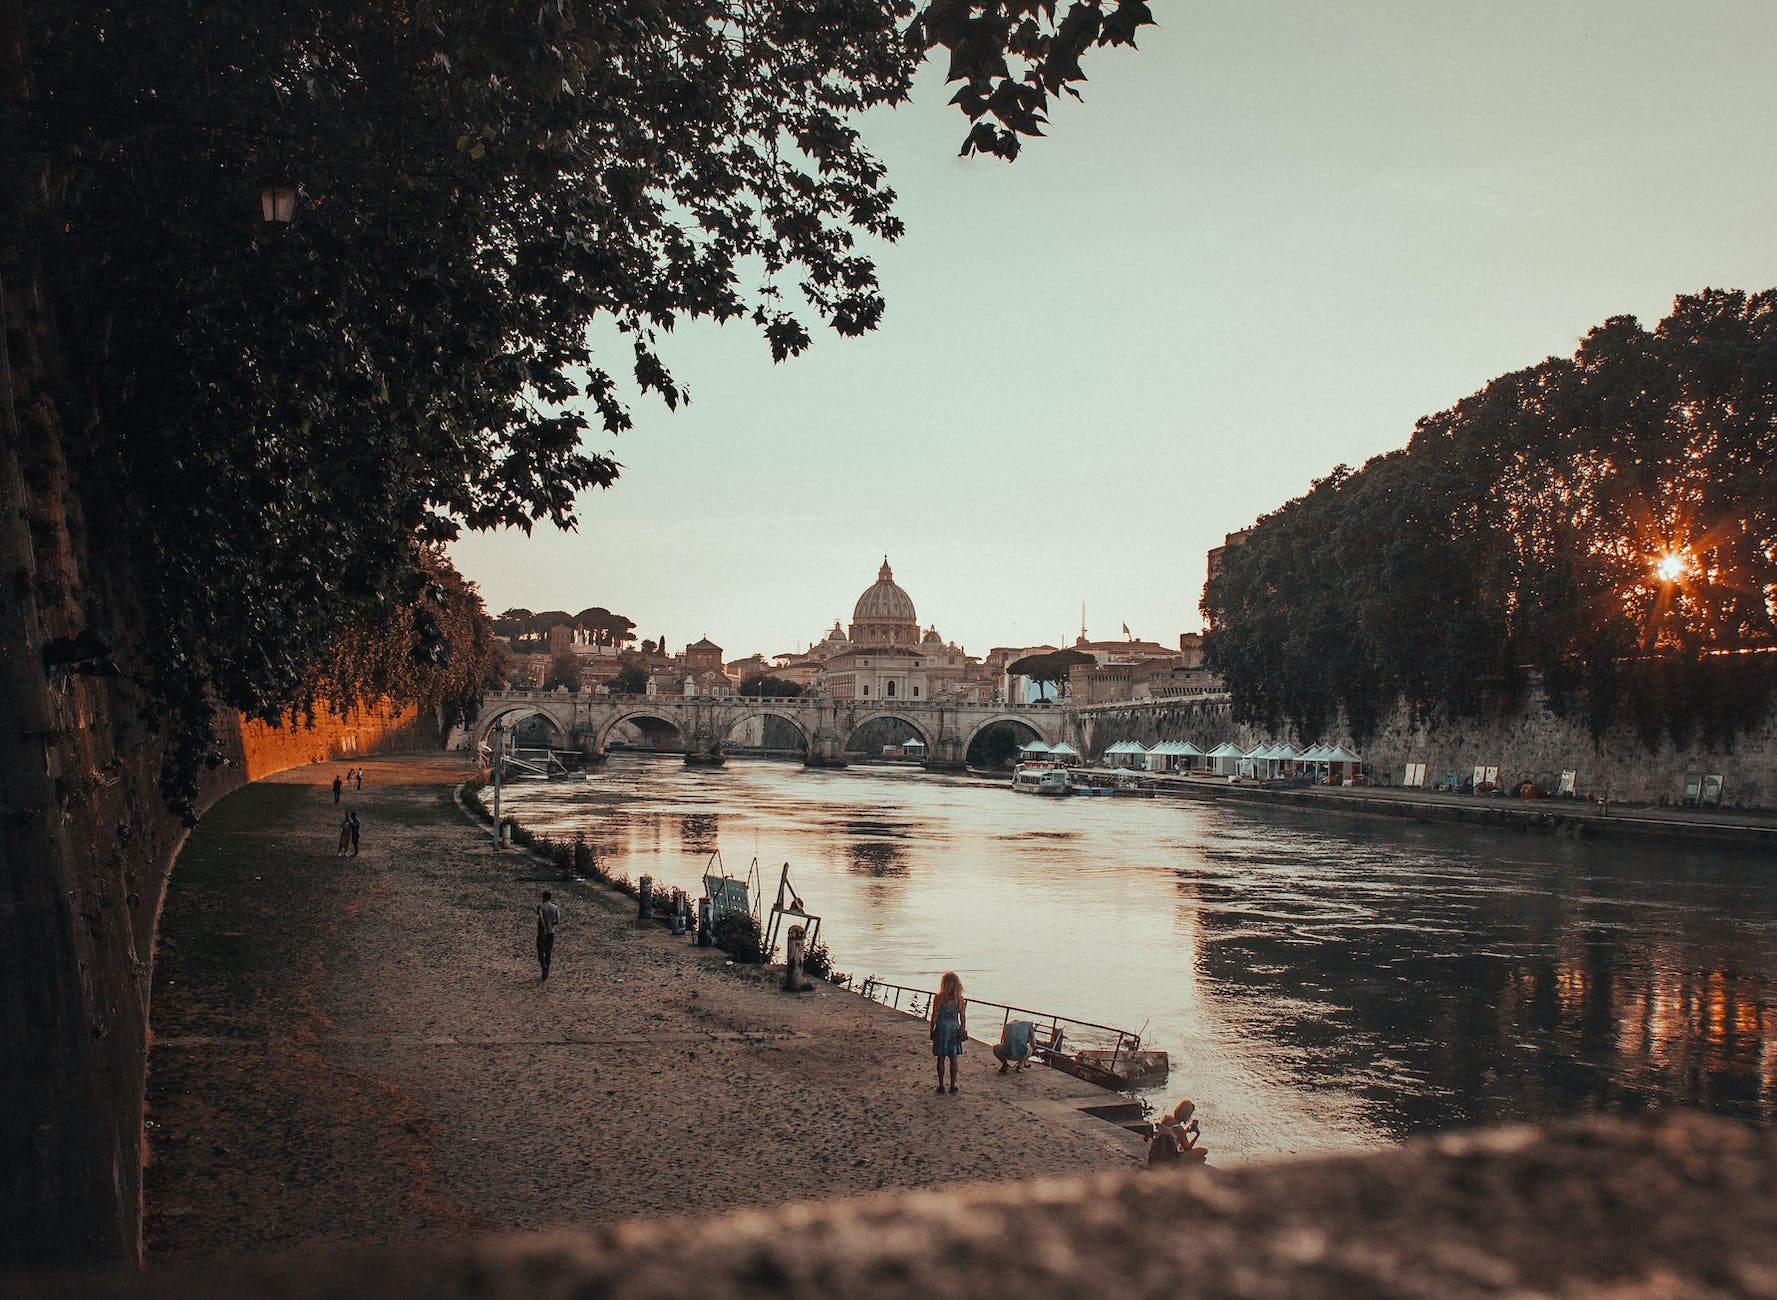 tevere river in rome